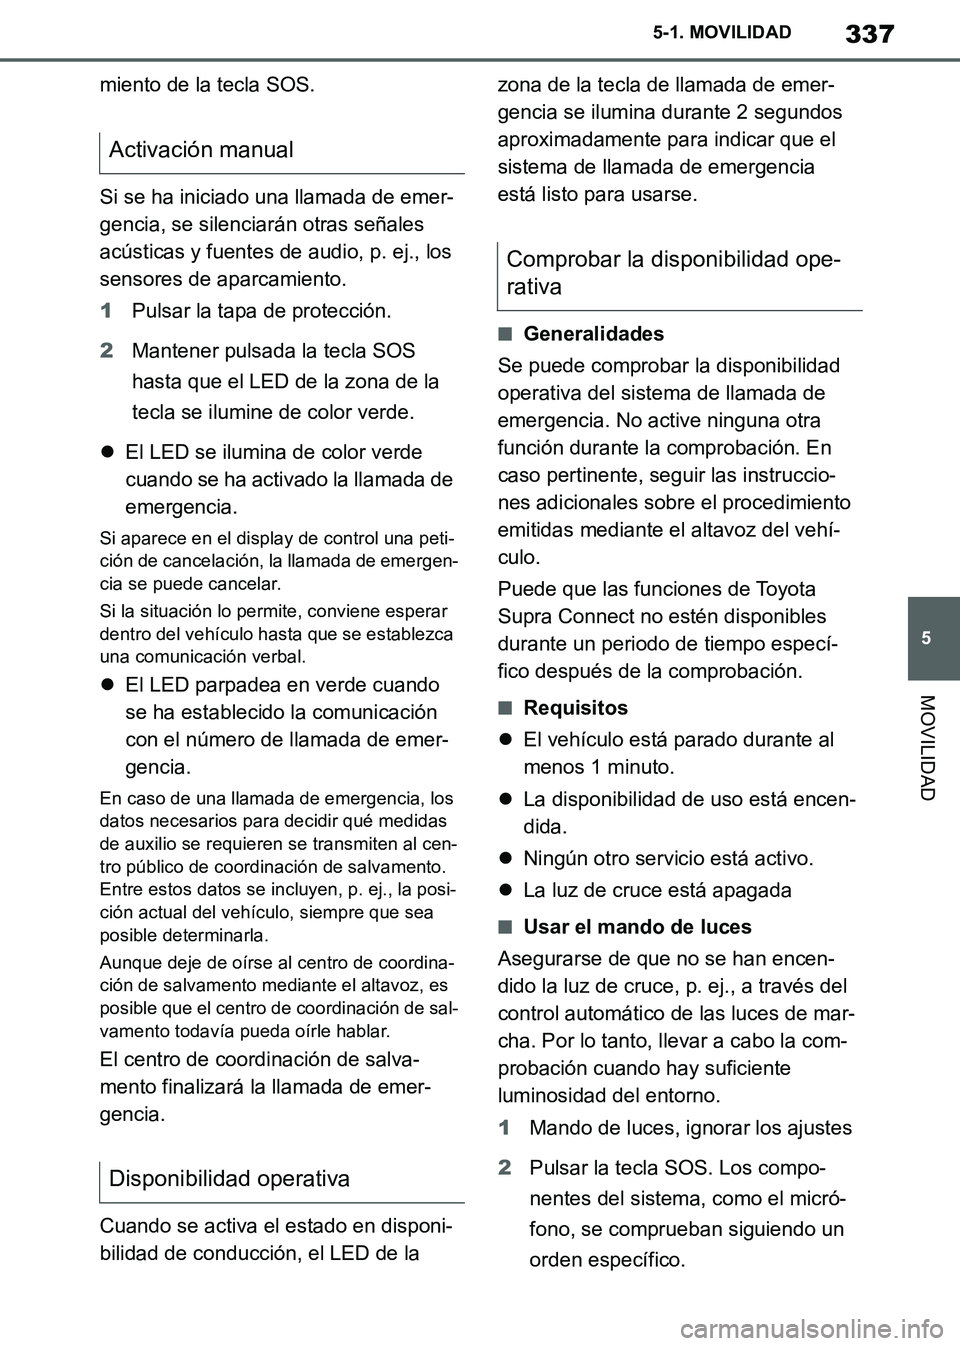 TOYOTA SUPRA 2019  Manuale de Empleo (in Spanish) 337
5
Supra Owners Manual_ES
5-1. MOVILIDAD
MOVILIDAD
miento de la tecla SOS.
Si se ha iniciado una llamada de emer-
gencia, se silenciarán otras señales 
acústicas y fuentes de audio, p. ej., los